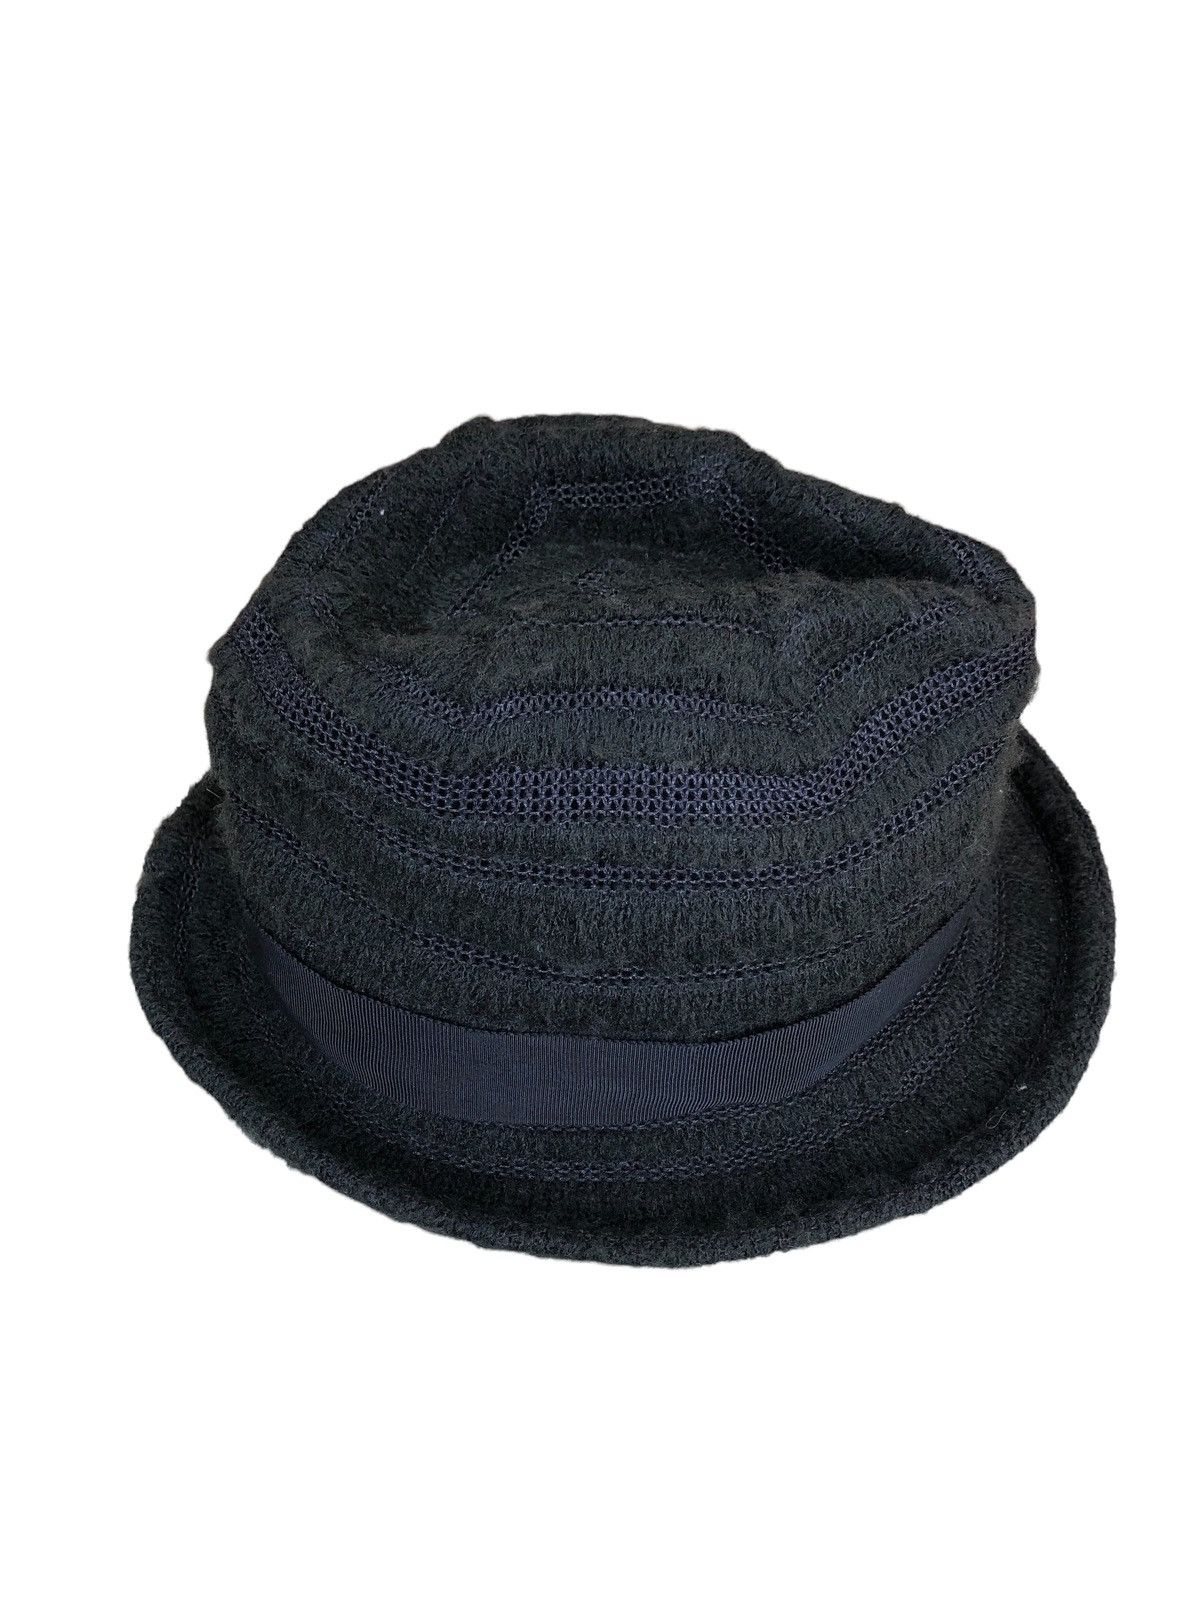 Ca4la - Bucket Hats - 4